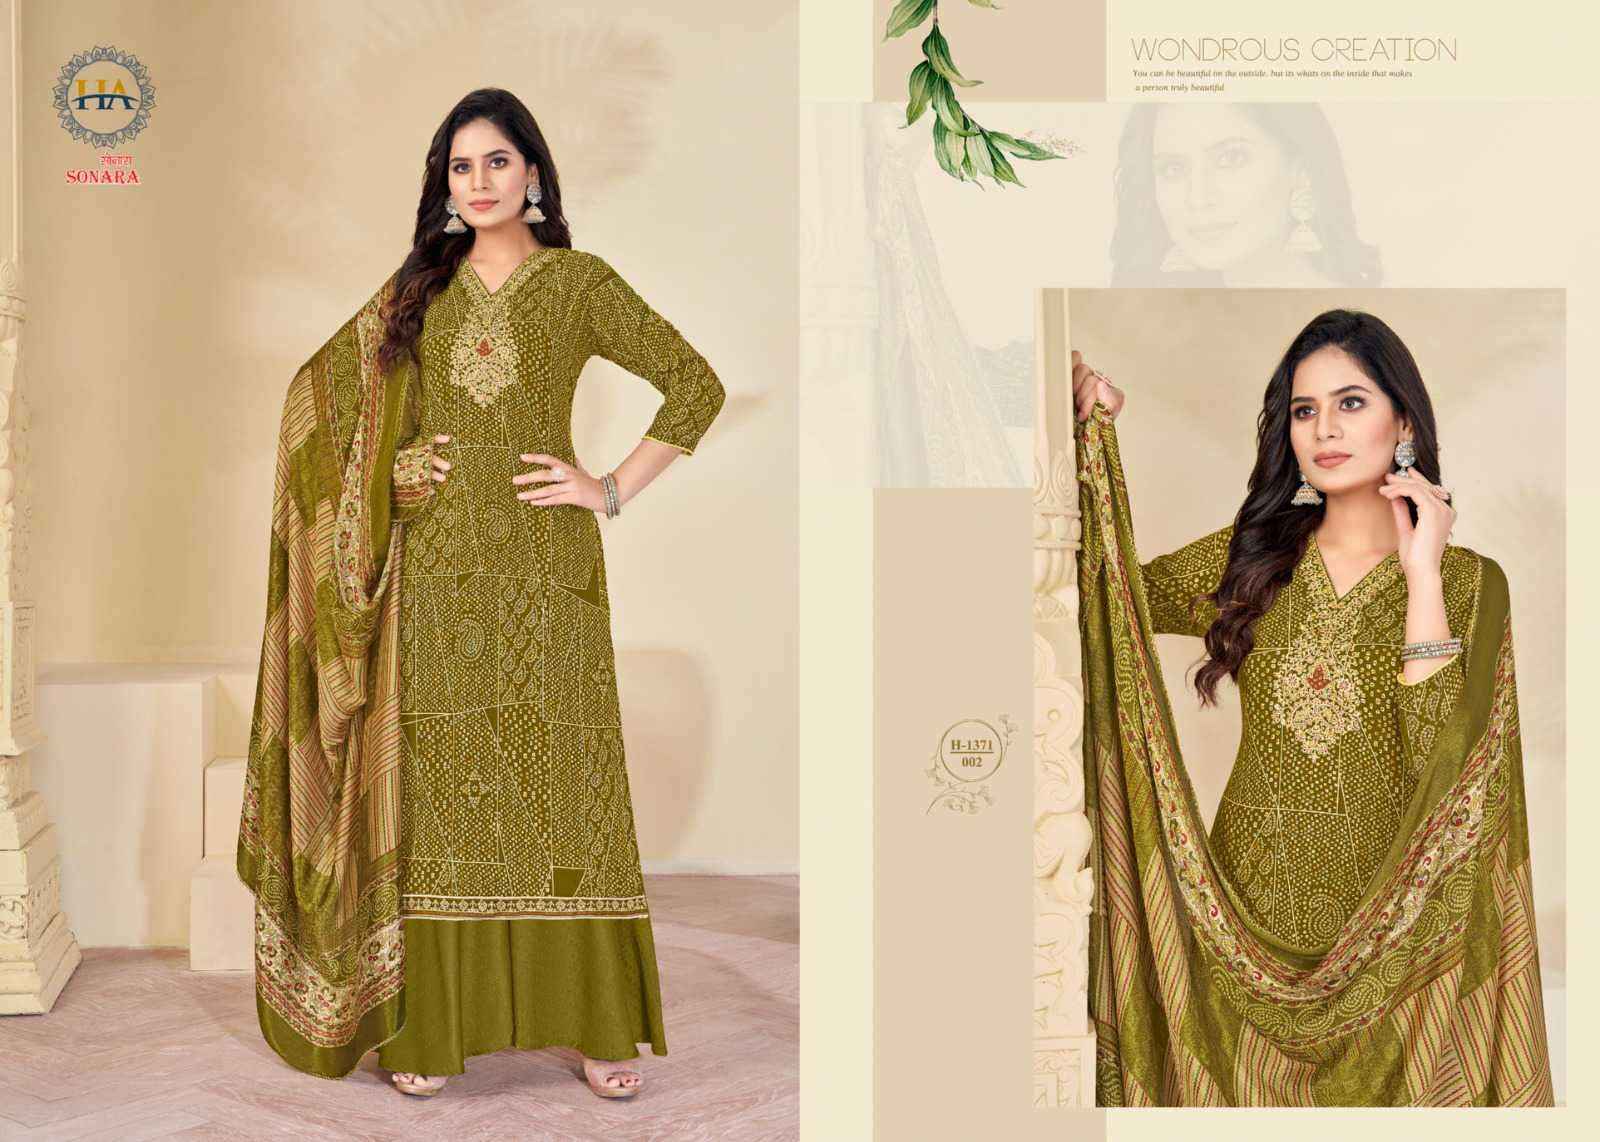 Harshit Fashion Sonara Viscose Dress Material 8 pcs Catalogue